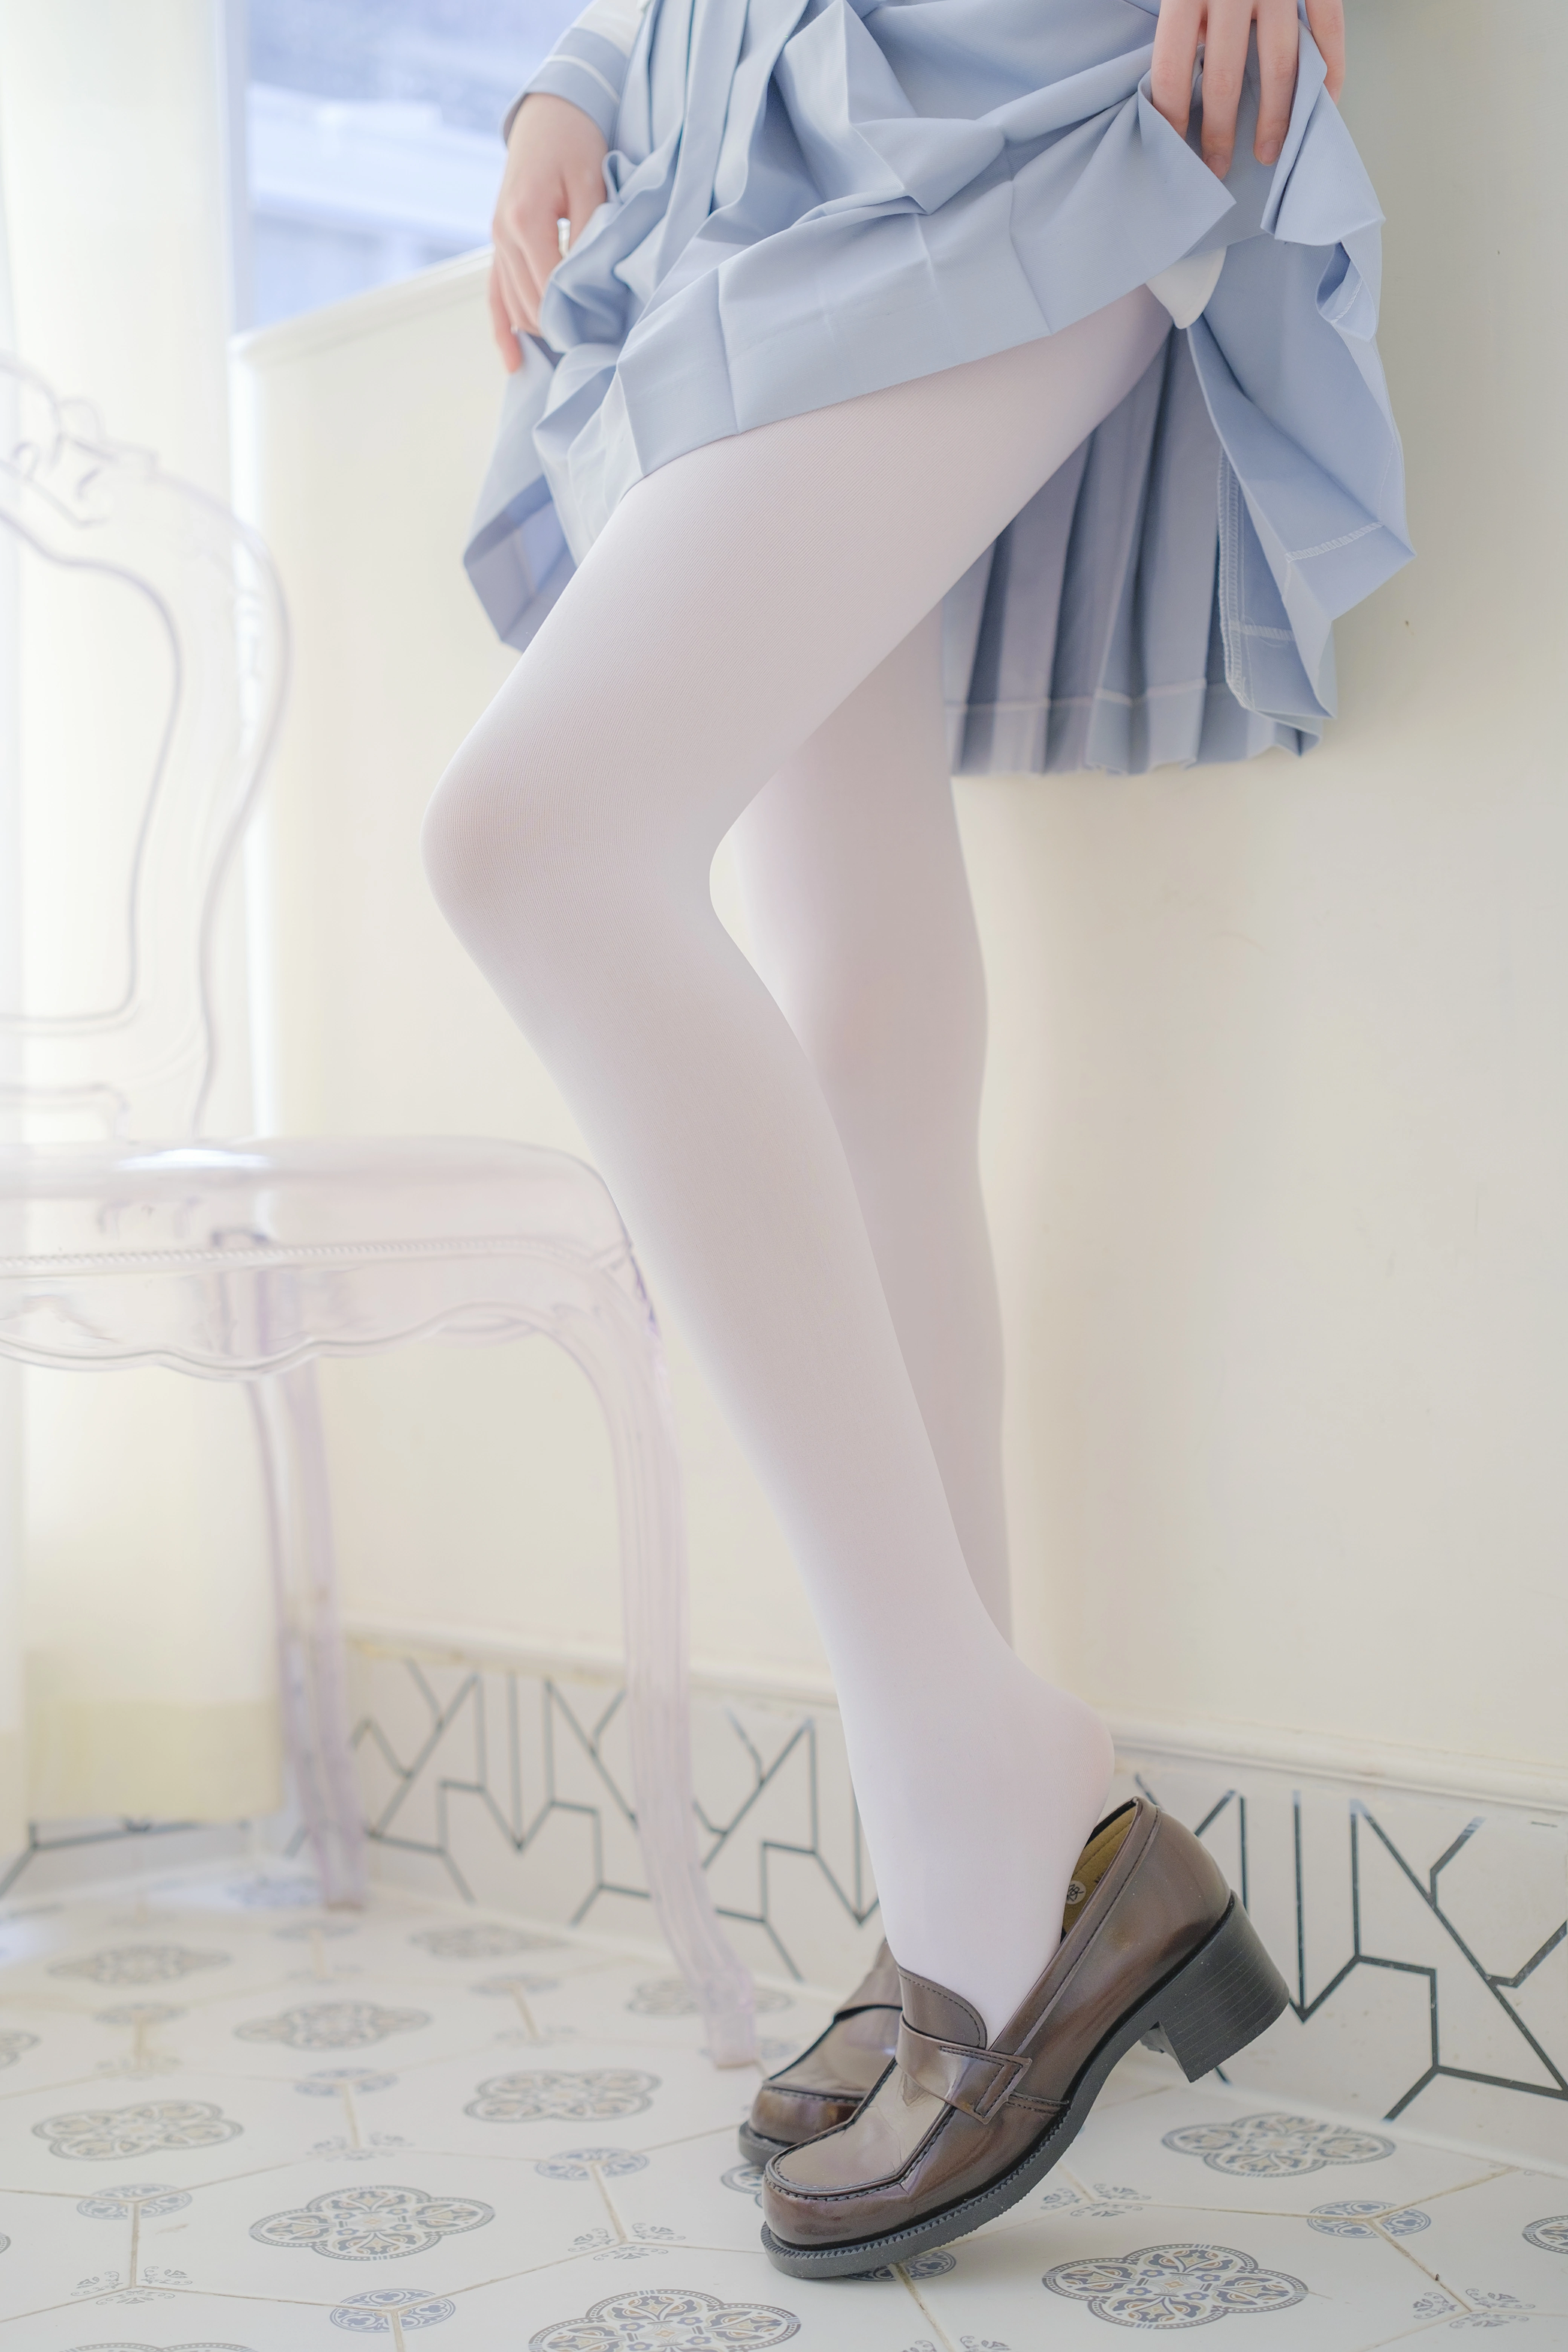 [森萝财团]内部VIP系列 微风-04 少女萝莉小学妹 白色JK制服与蓝色短裙加白色丝袜美腿私房写真集,0022